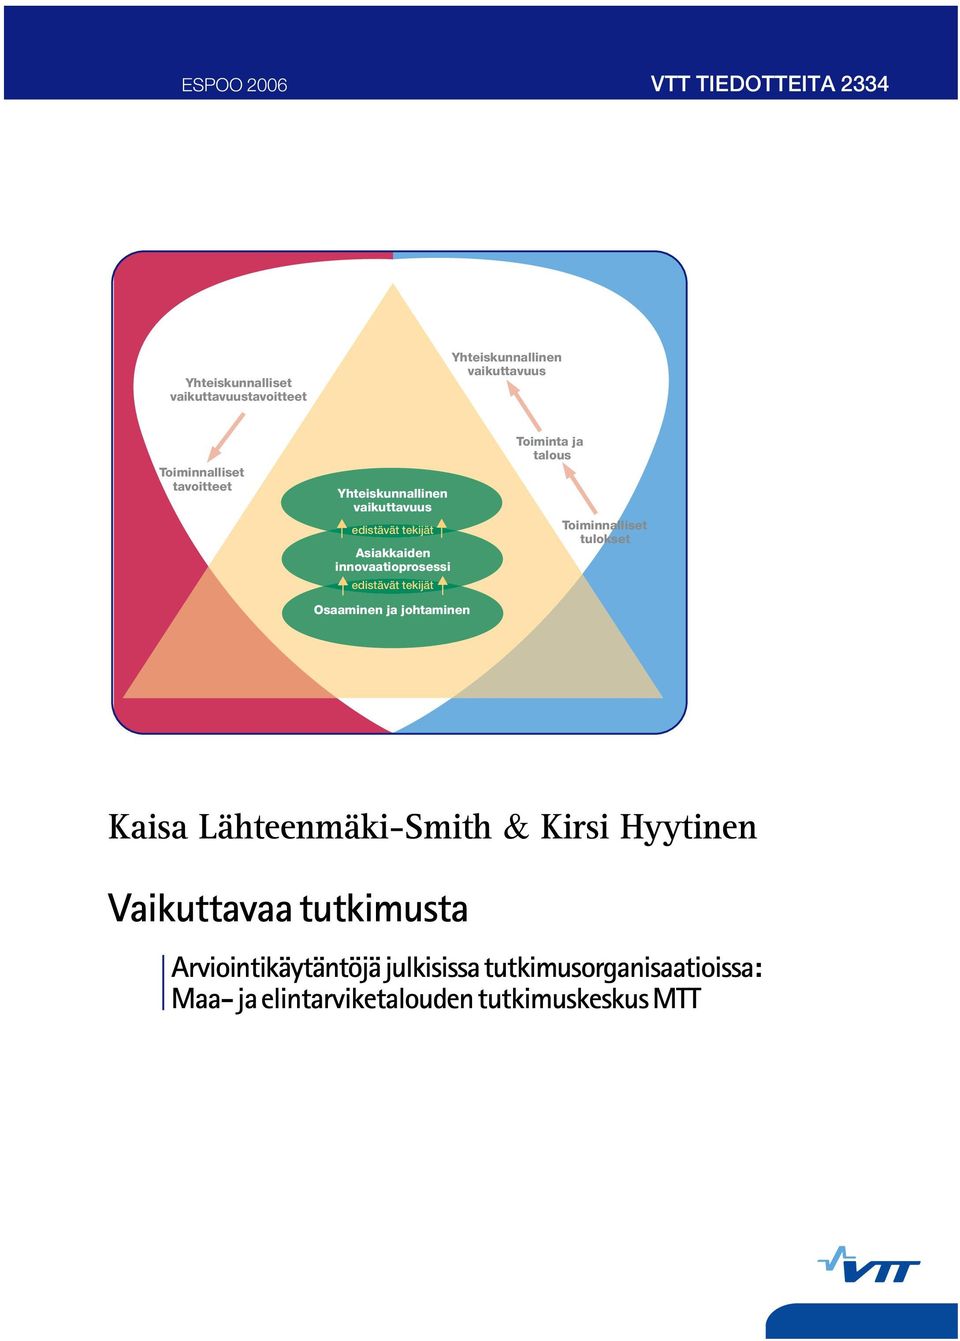 tekijät Osaaminen ja johtaminen Toiminta ja talous Toiminnalliset tulokset Kaisa Lähteenmäki-Smith & Kirsi Hyytinen